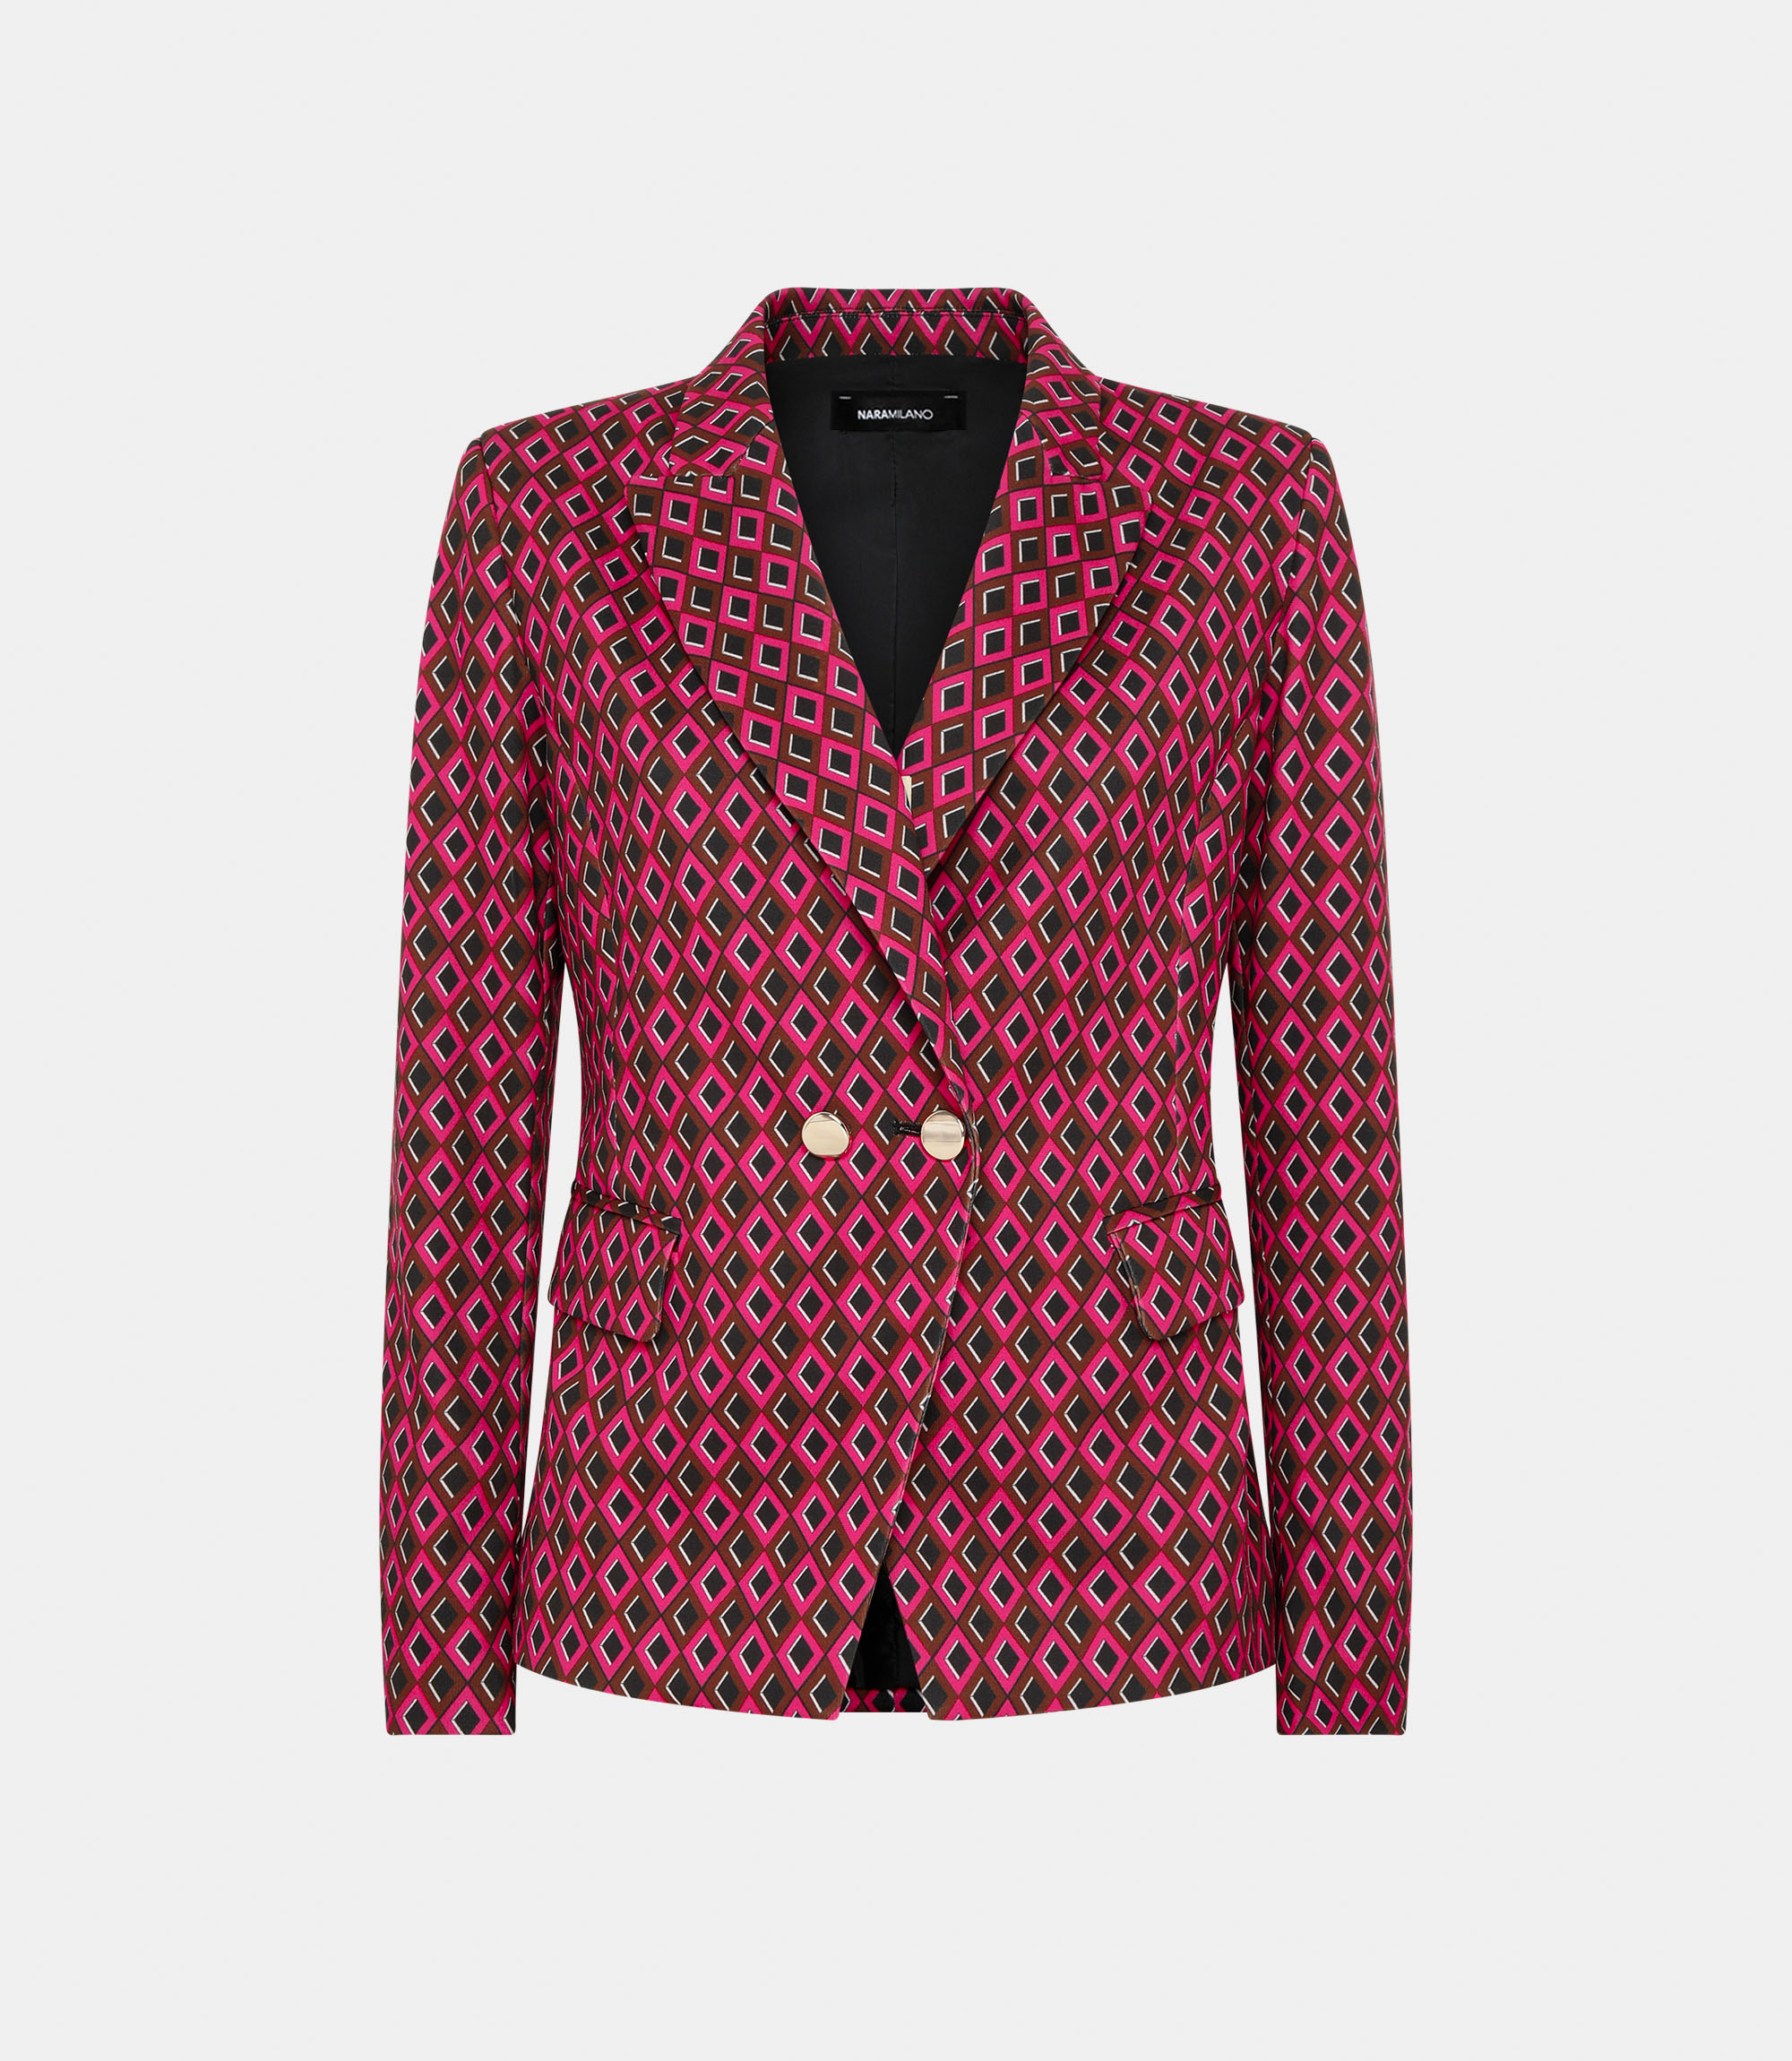 Jacket with prints - CLOTHING - NaraMilano